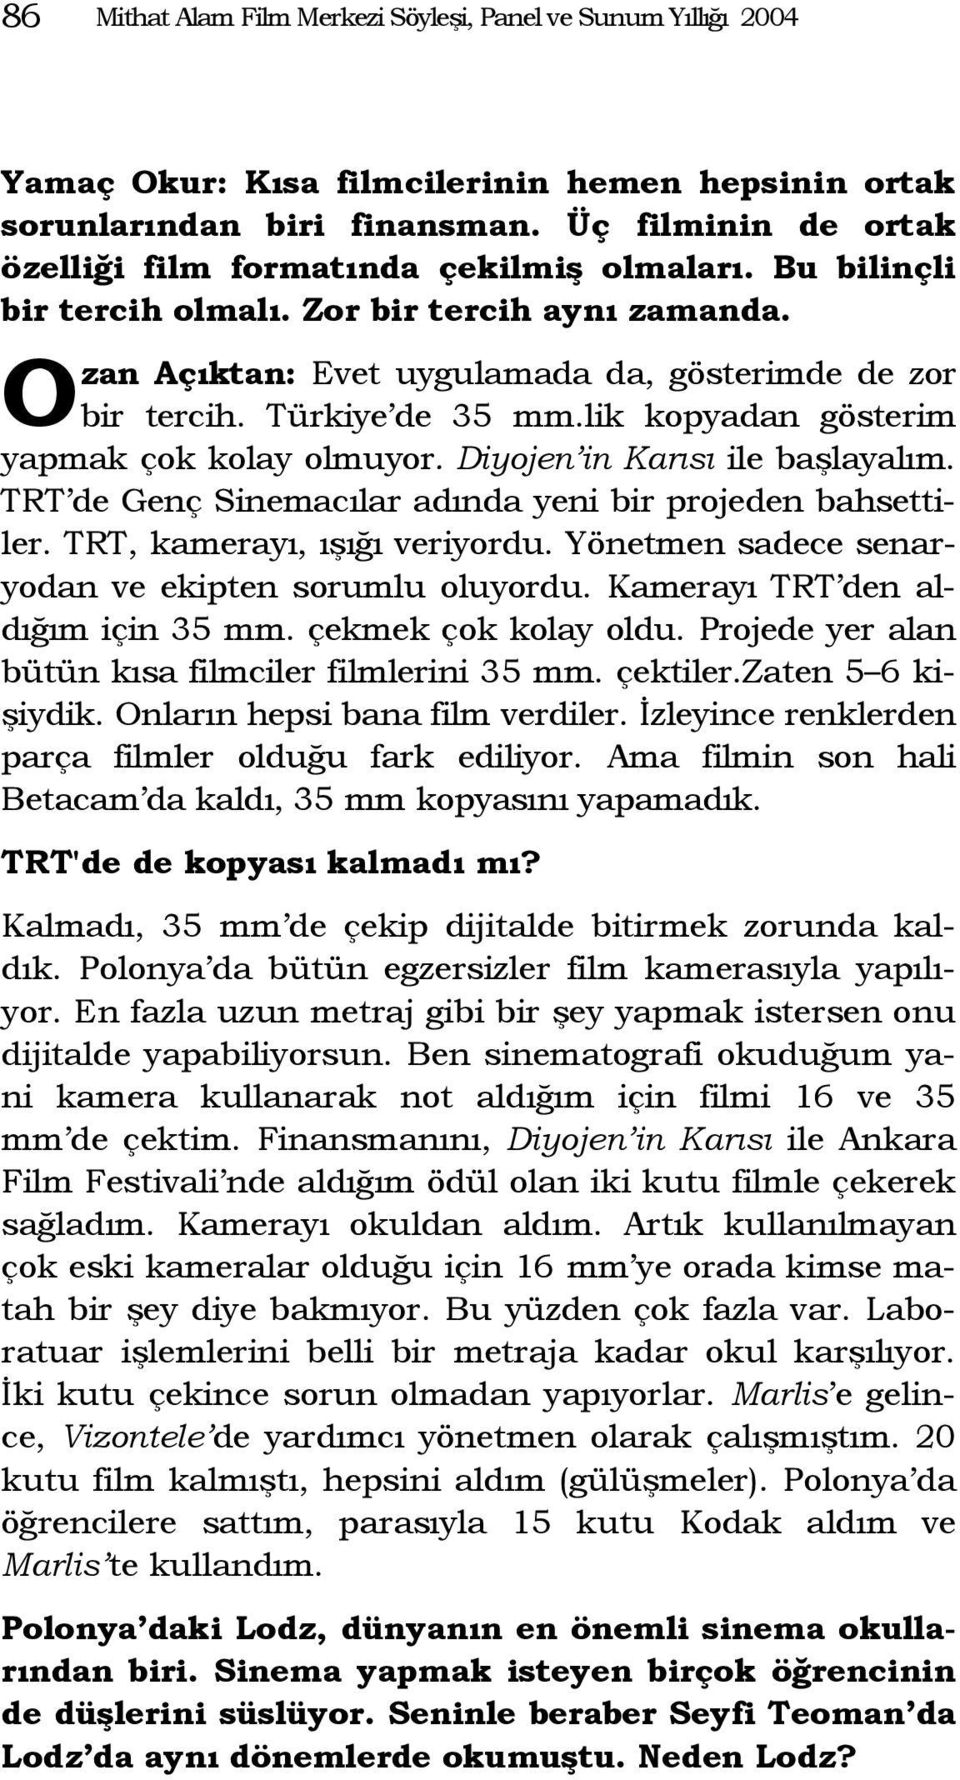 Türkiye de 35 mm.lik kopyadan gösterim yapmak çok kolay olmuyor. Diyojen in Karısı ile başlayalım. TRT de Genç Sinemacılar adında yeni bir projeden bahsettiler. TRT, kamerayı, ışığı veriyordu.